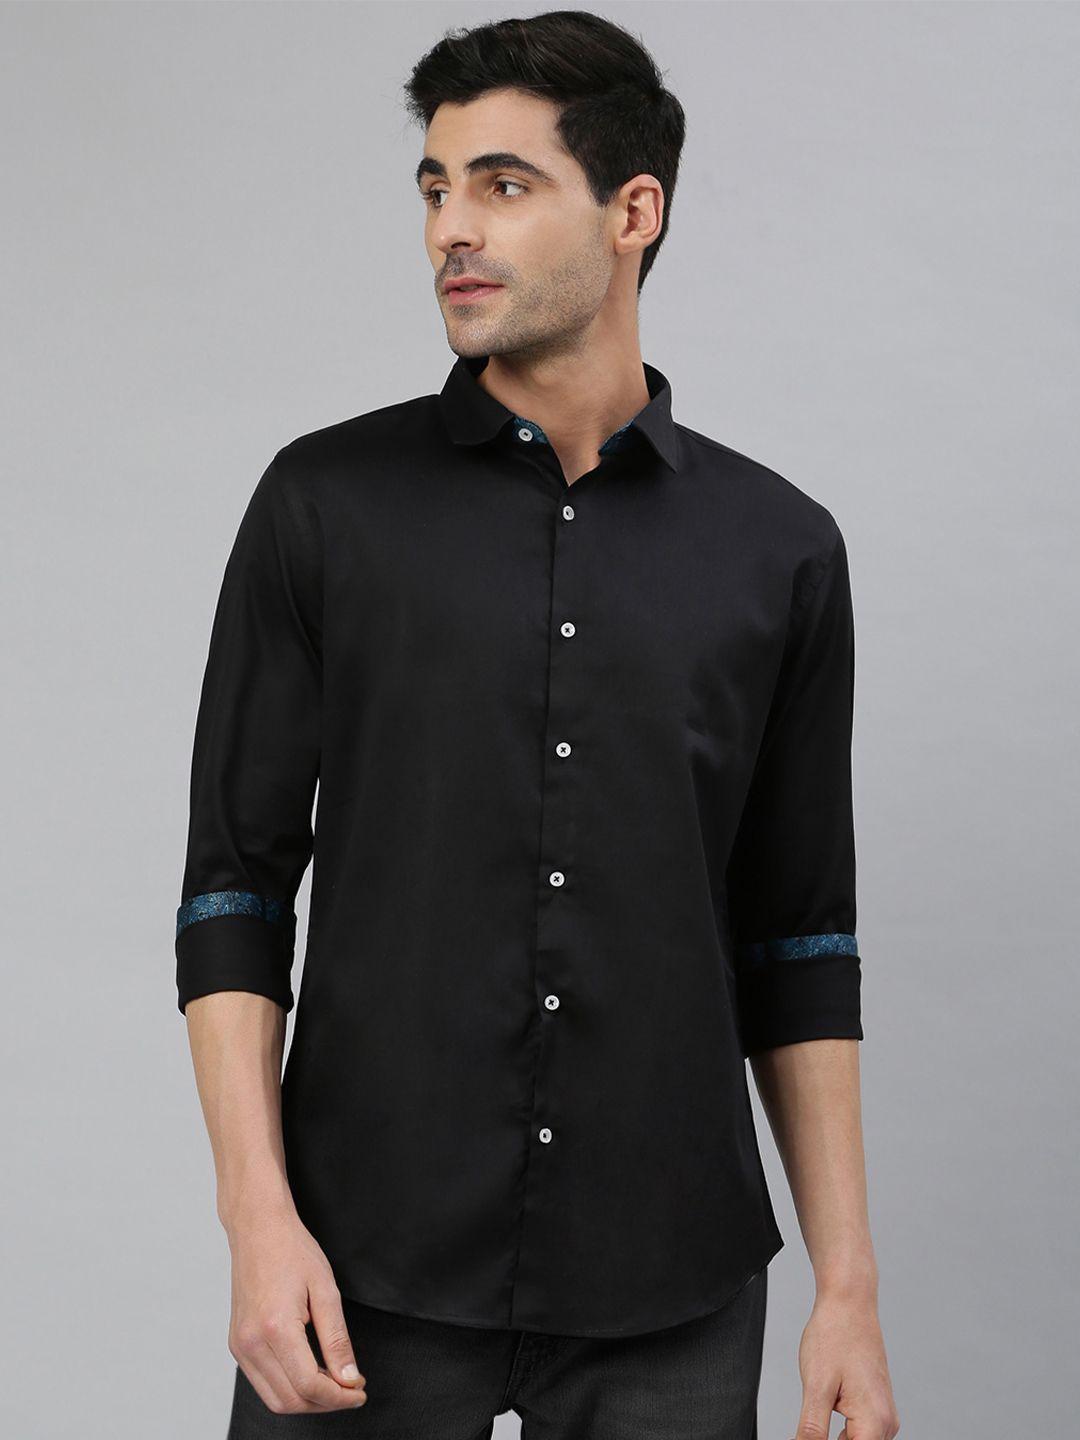 mr button men black smart slim fit casual shirt